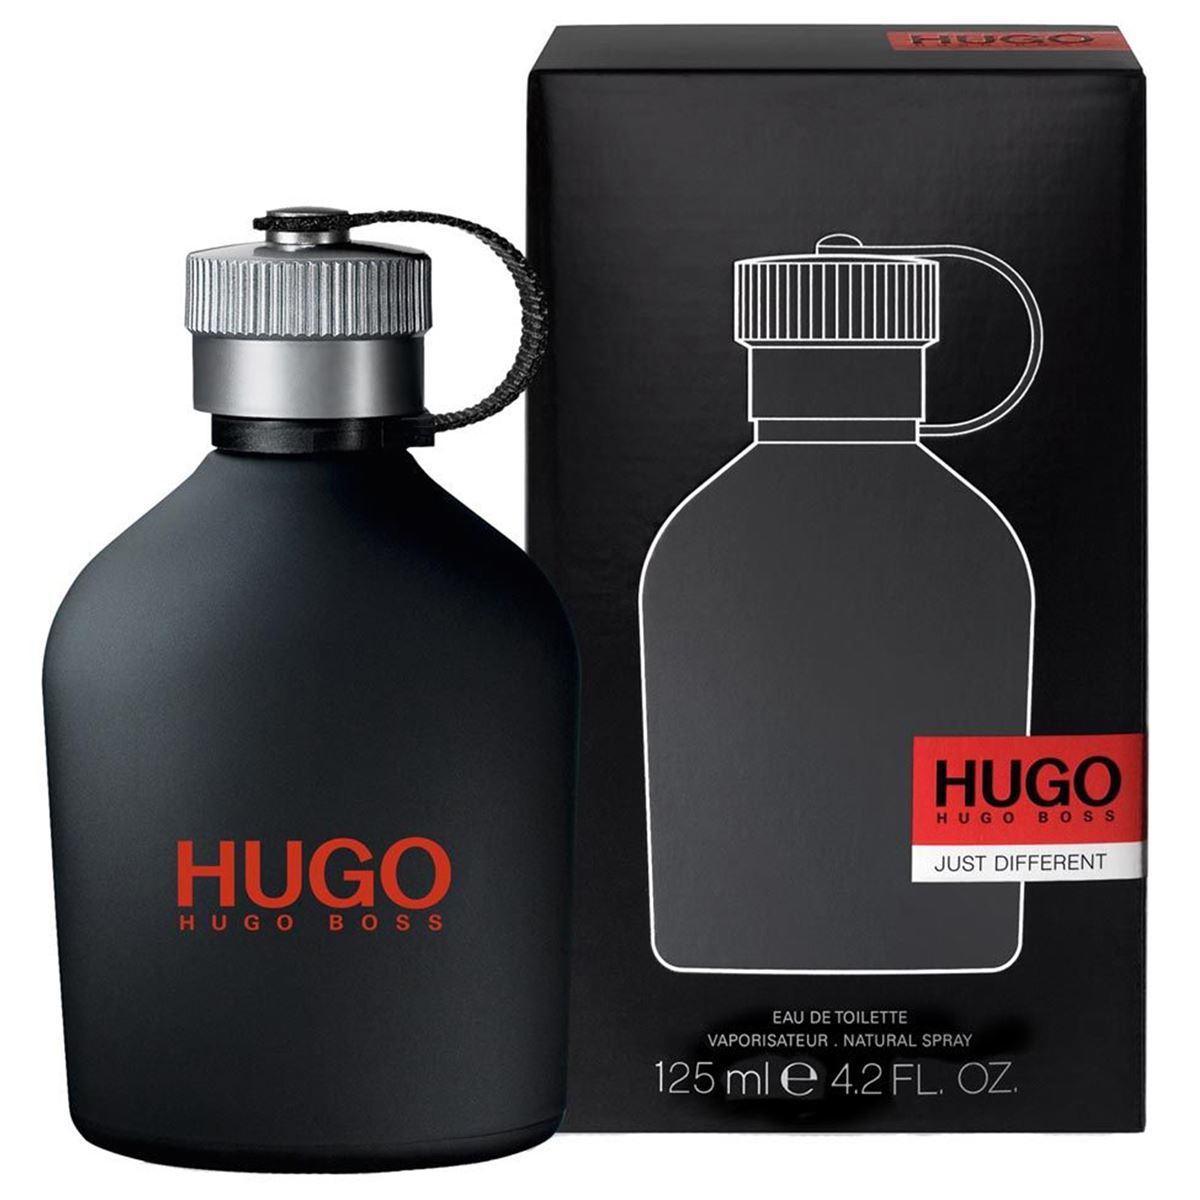 HUGO BOSS - Hugo Just Different para hombre / 125 ml Eau De Toilette Spray